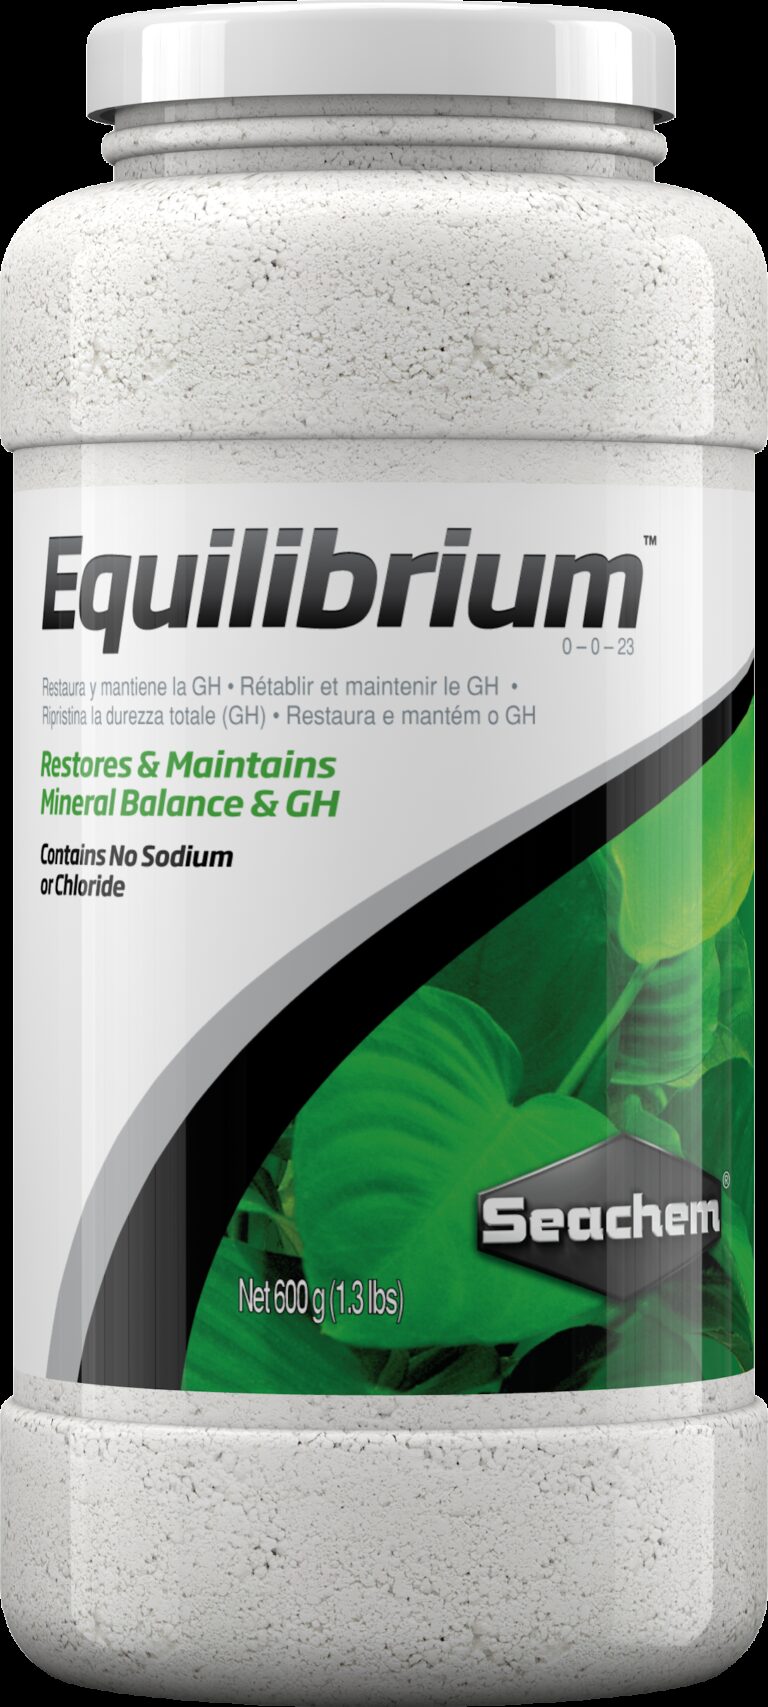 Seachem Equlibrium 600g